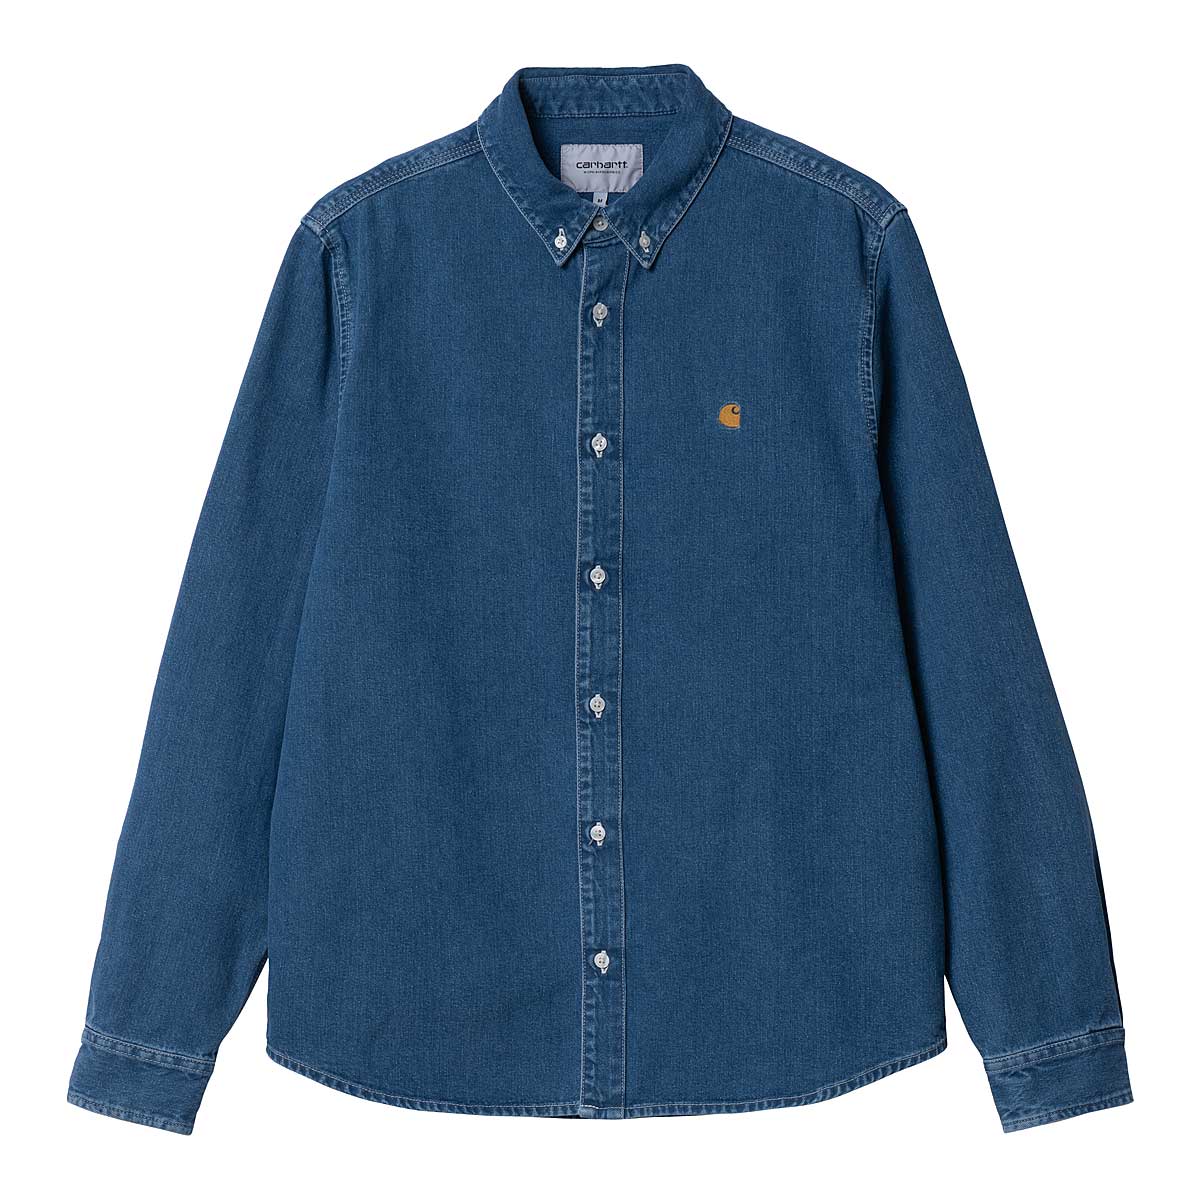 Carhartt Wip L/s Weldon Shirt, Blue